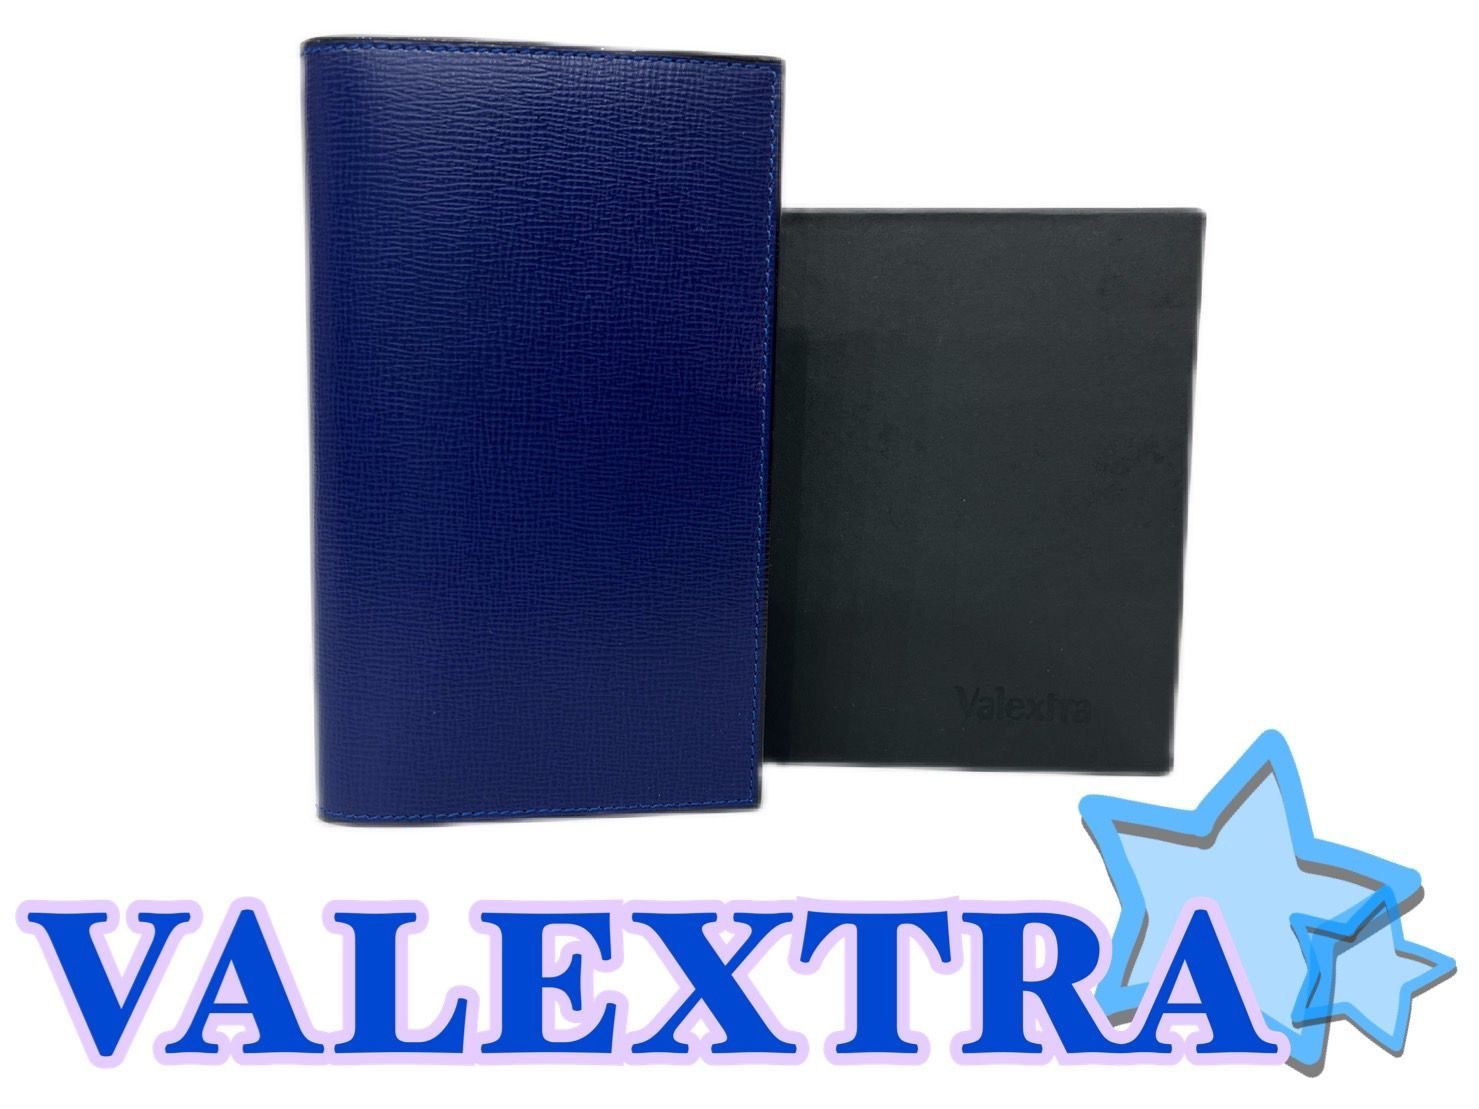 【限定SALE格安】Valextra ブックカバー ソフトカーフスキン ネイビー ブルー イタリア製 手帳・日記・家計簿